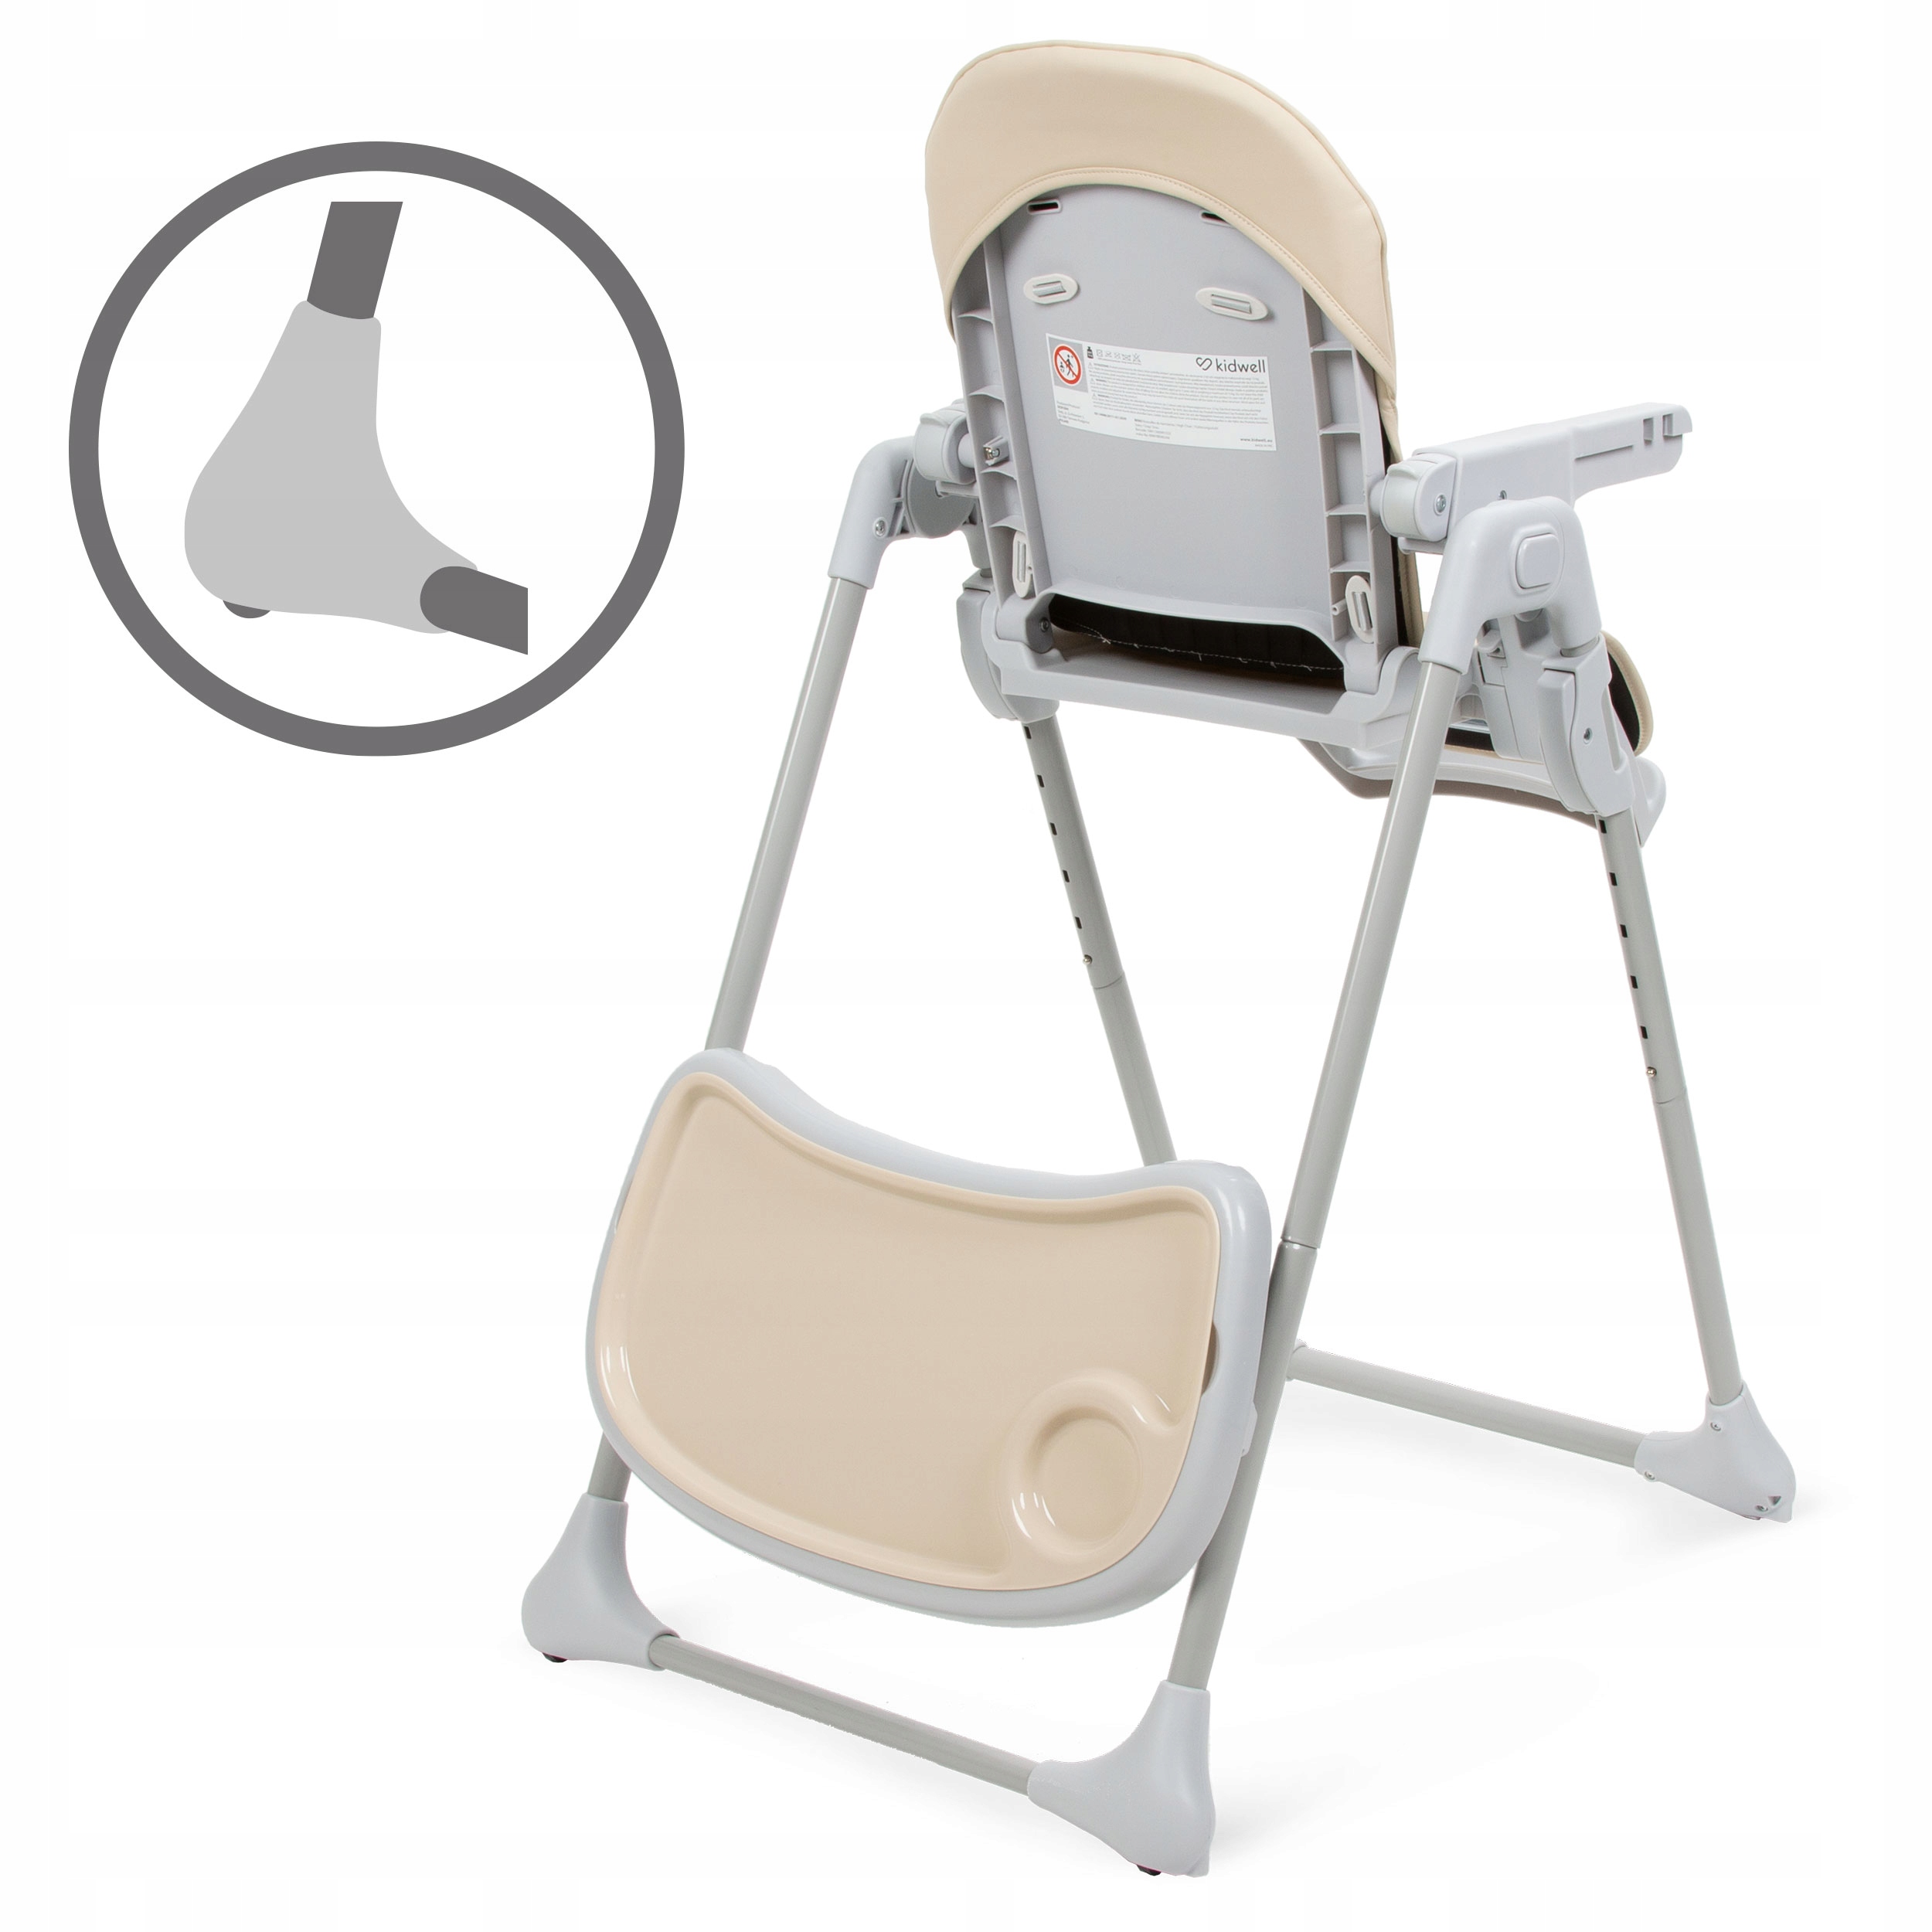 Wielofunkcyjne krzesełko do karmienia Kidwell BENO Szerokość produktu 54 cm